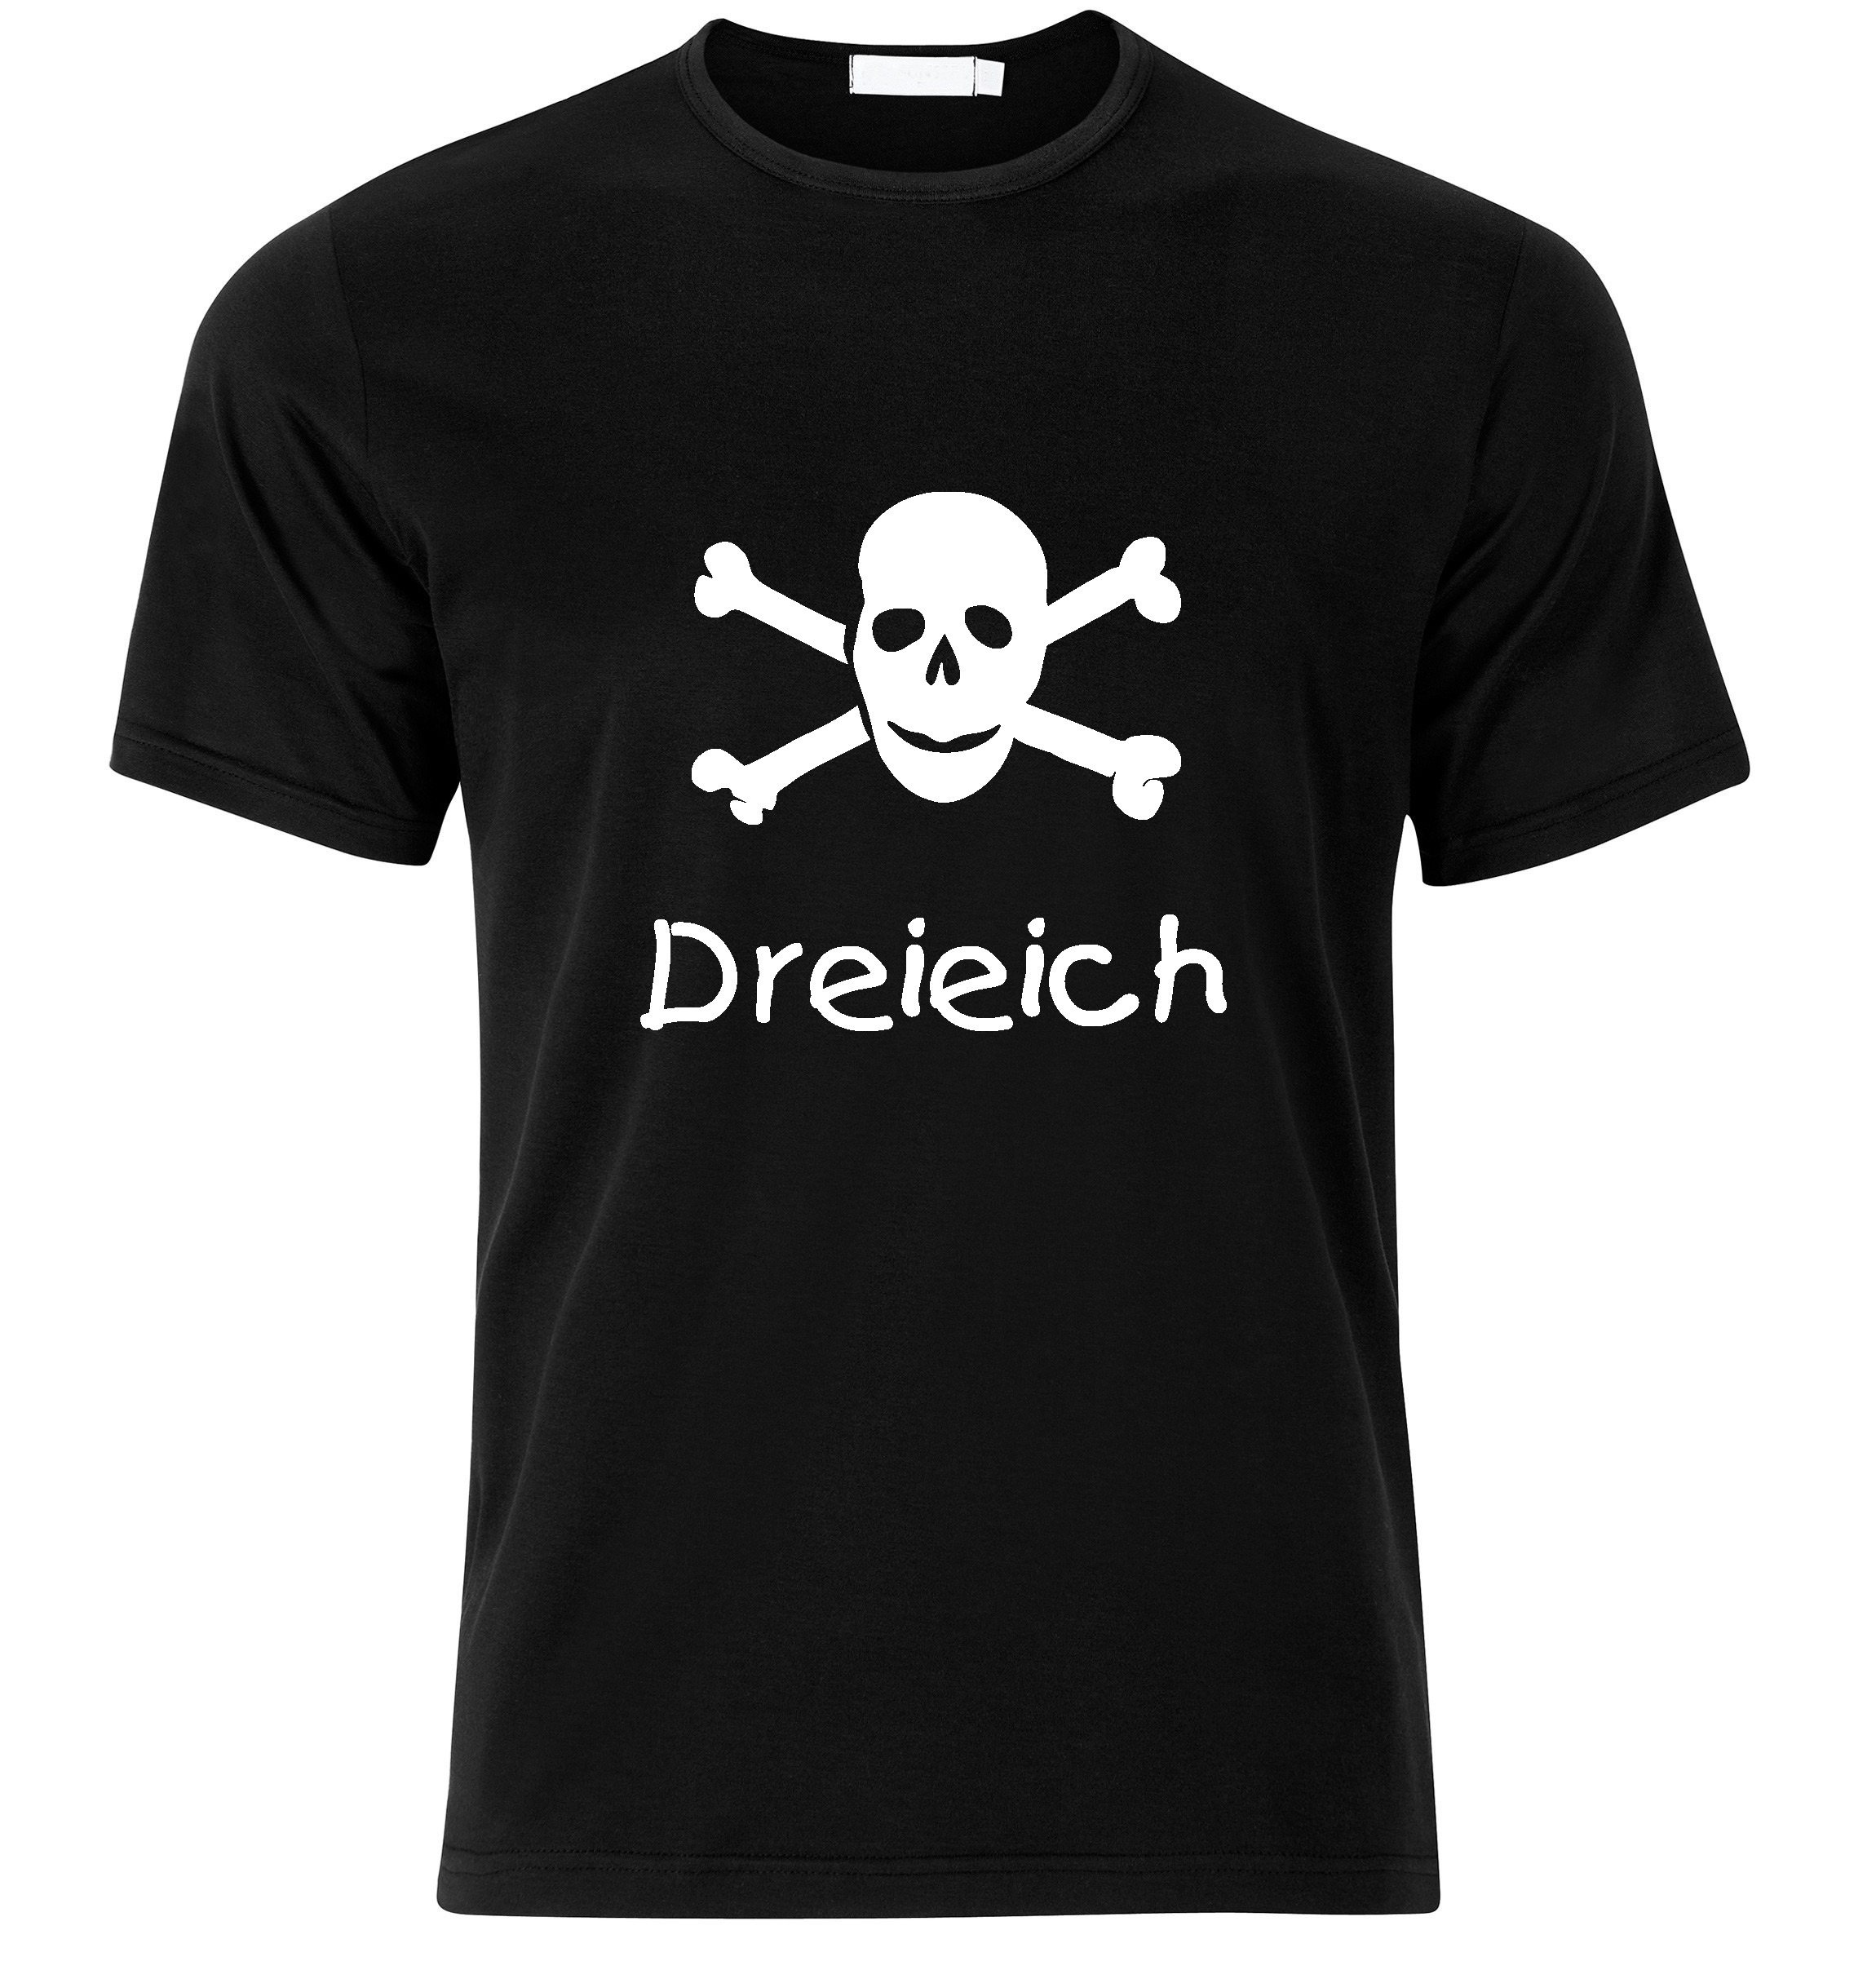 T-Shirt Dreieich Jolly Roger, Totenkopf